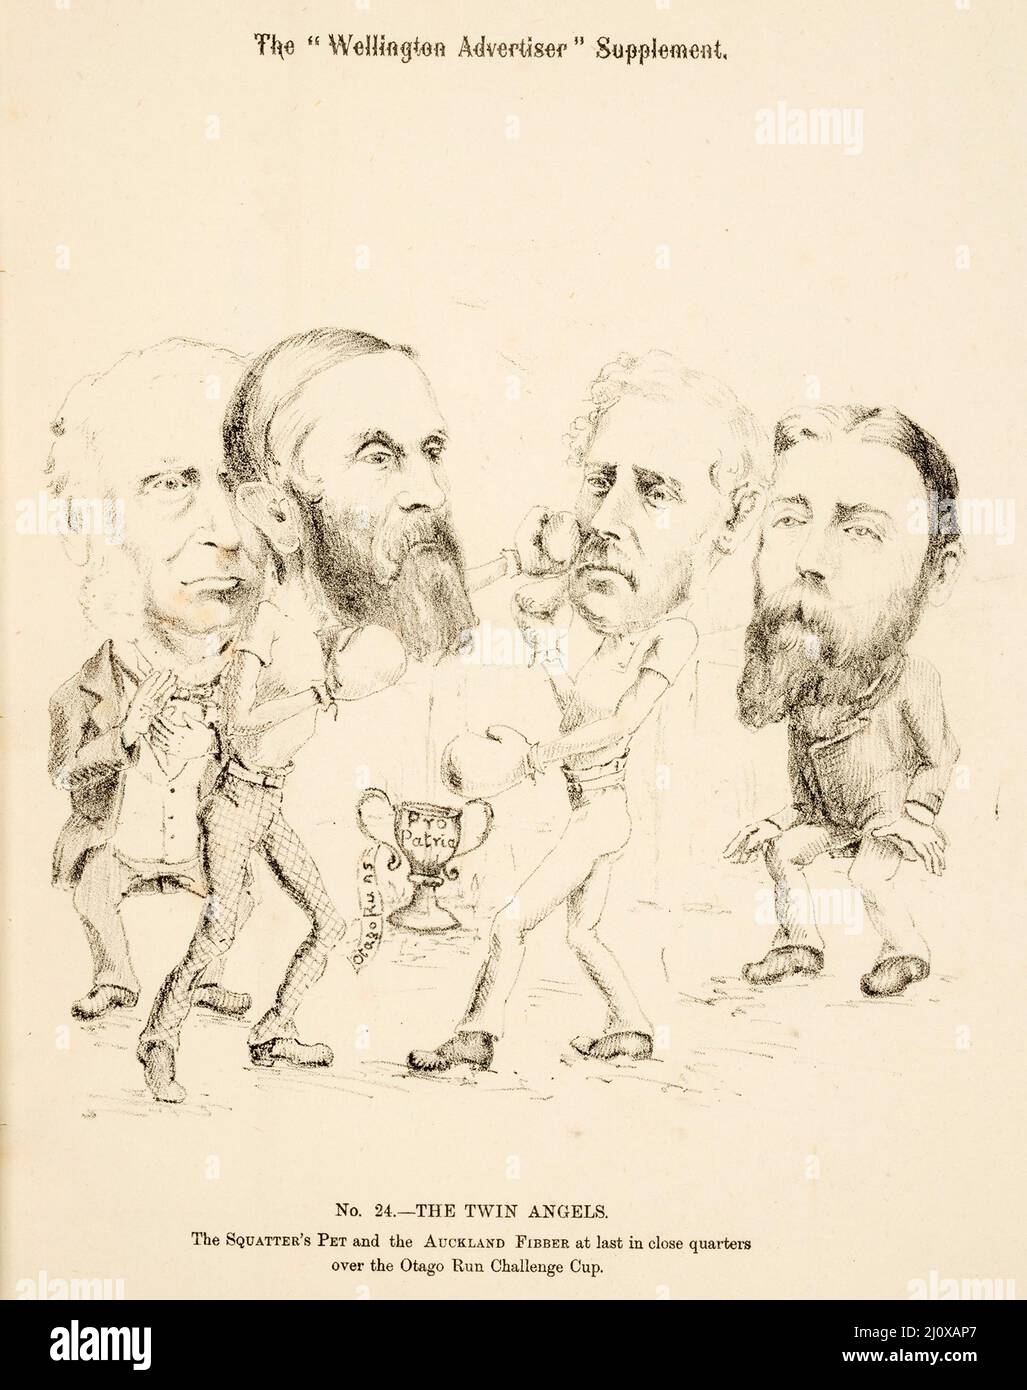 Skizze der politischen Fragen, die für die Parlamentswahlen 1881 in Neuseeland relevant sind, aus einer Karikatur, die in der Wellington Advertiser Supplement veröffentlicht wurde Stockfoto